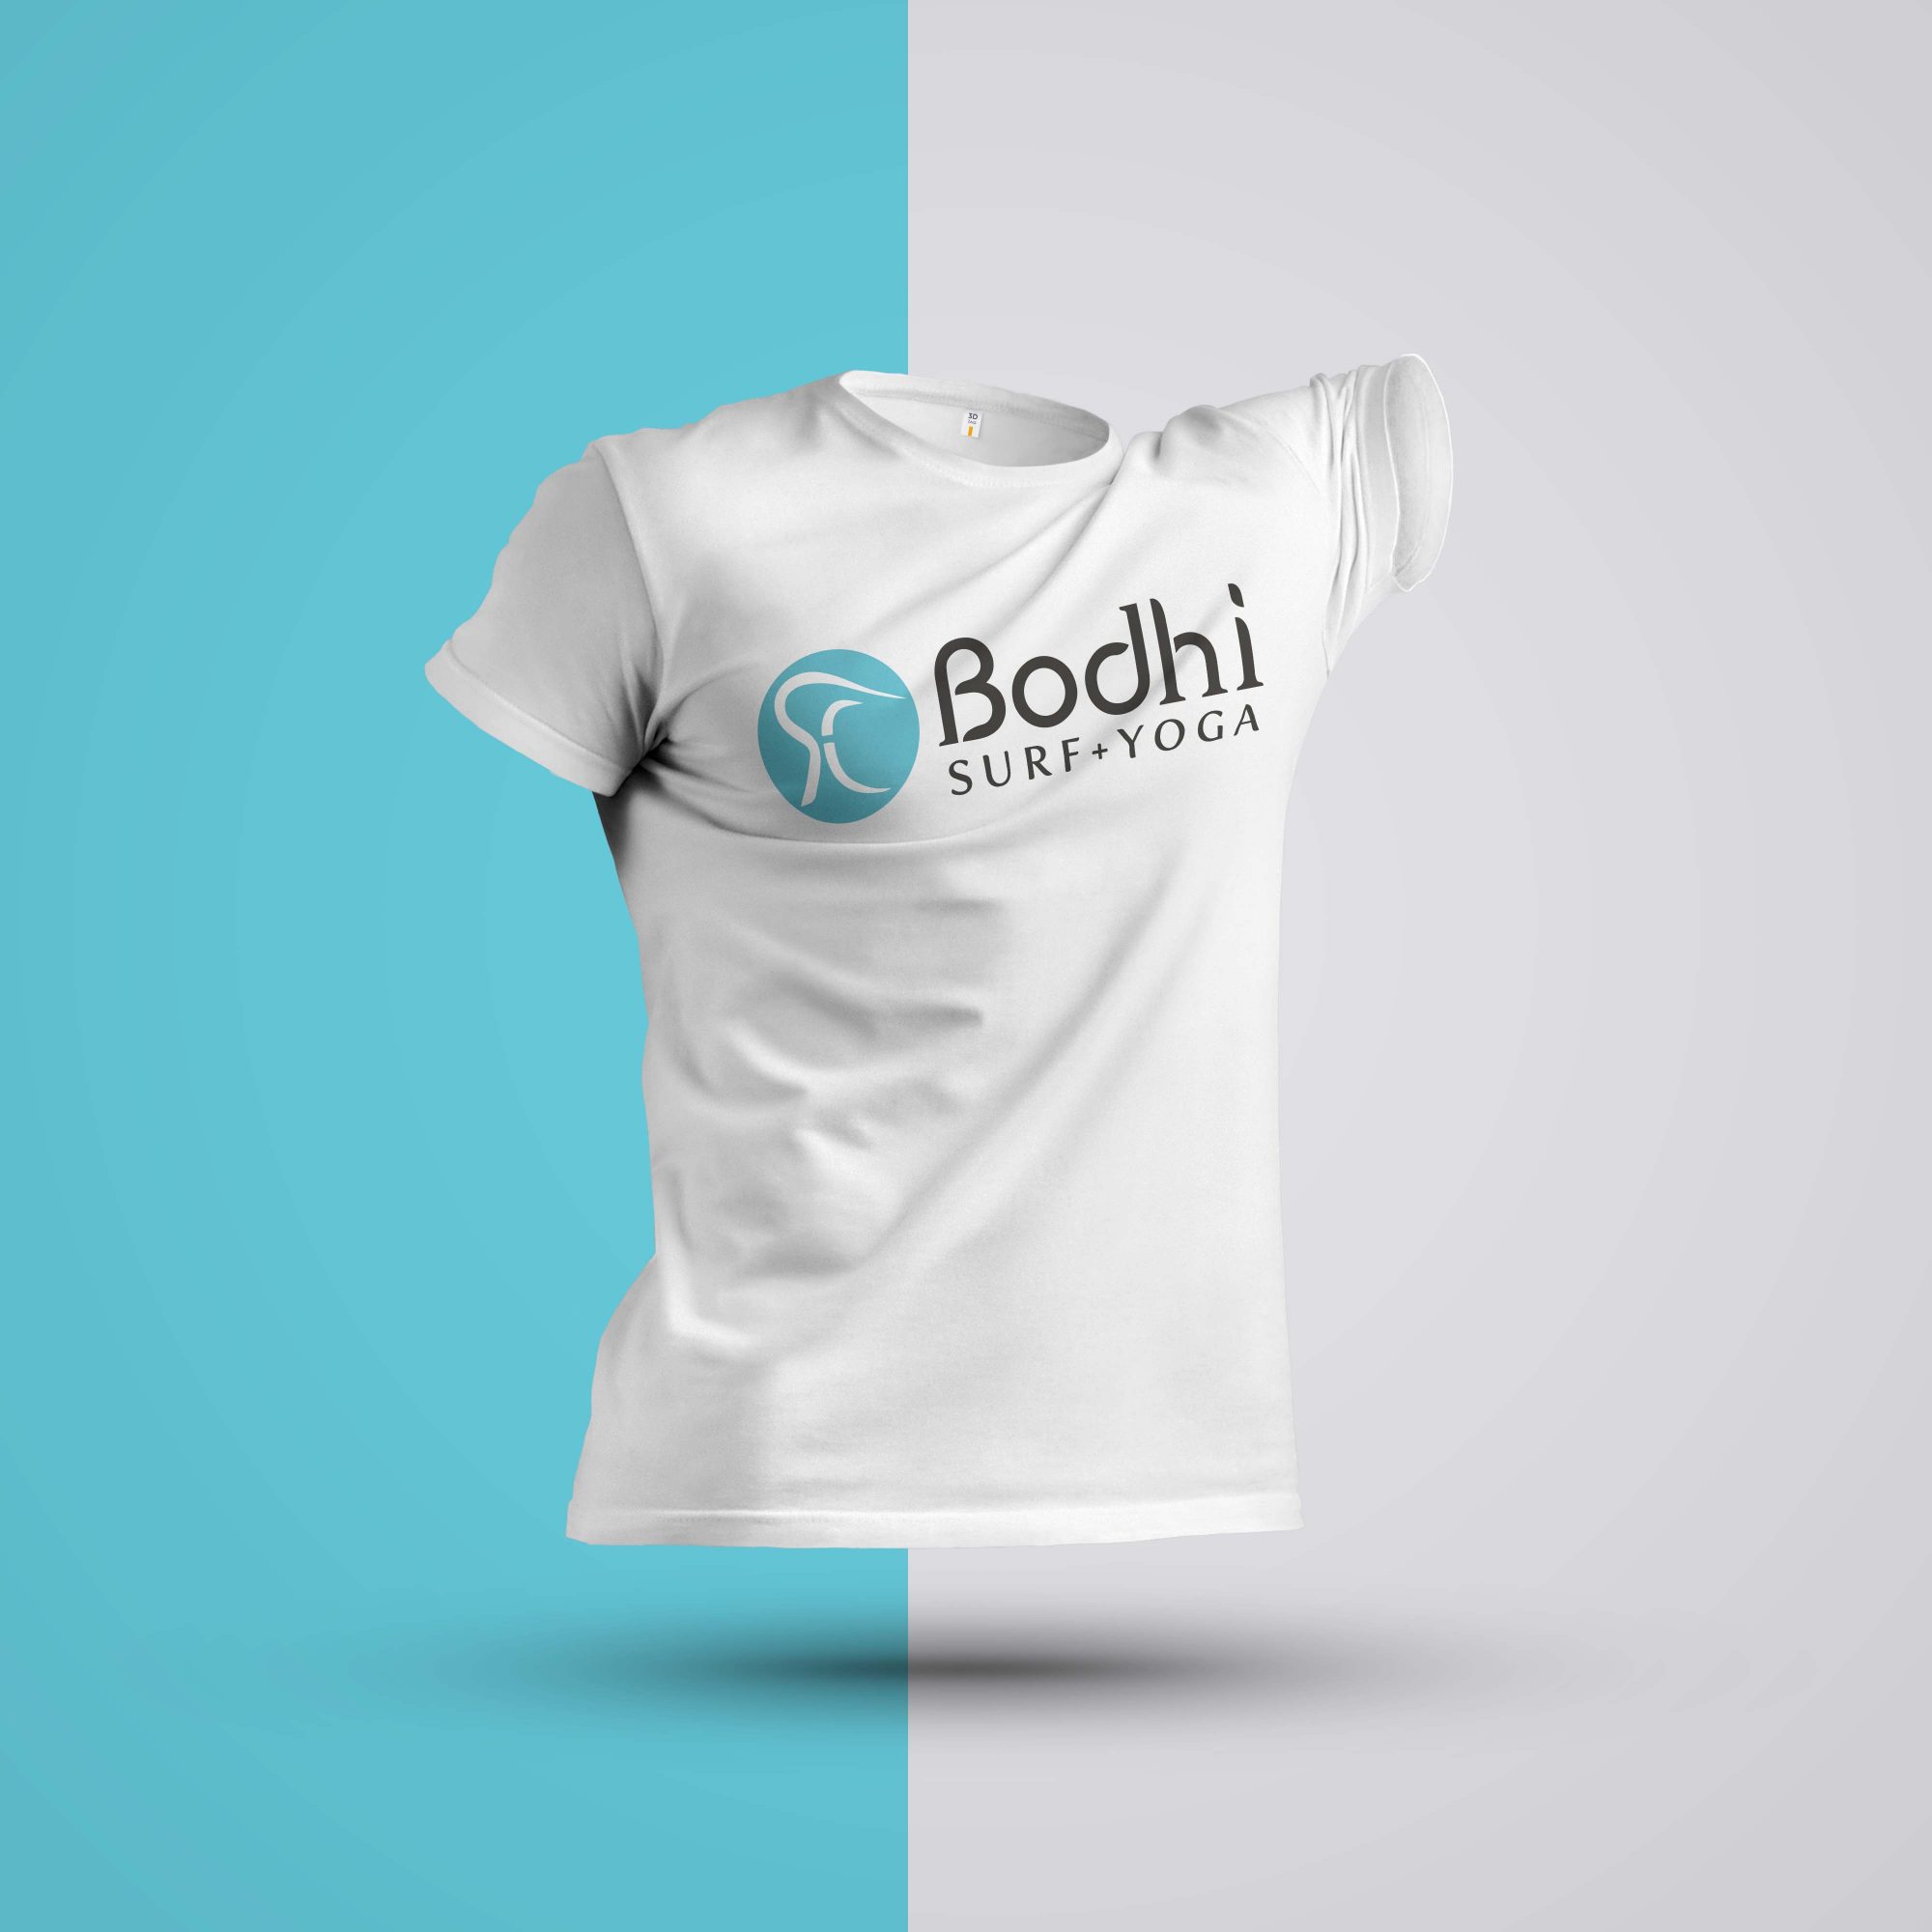 Bodhi Surf+Yoga Tshirt for Women • Bodhi Surf + Yoga